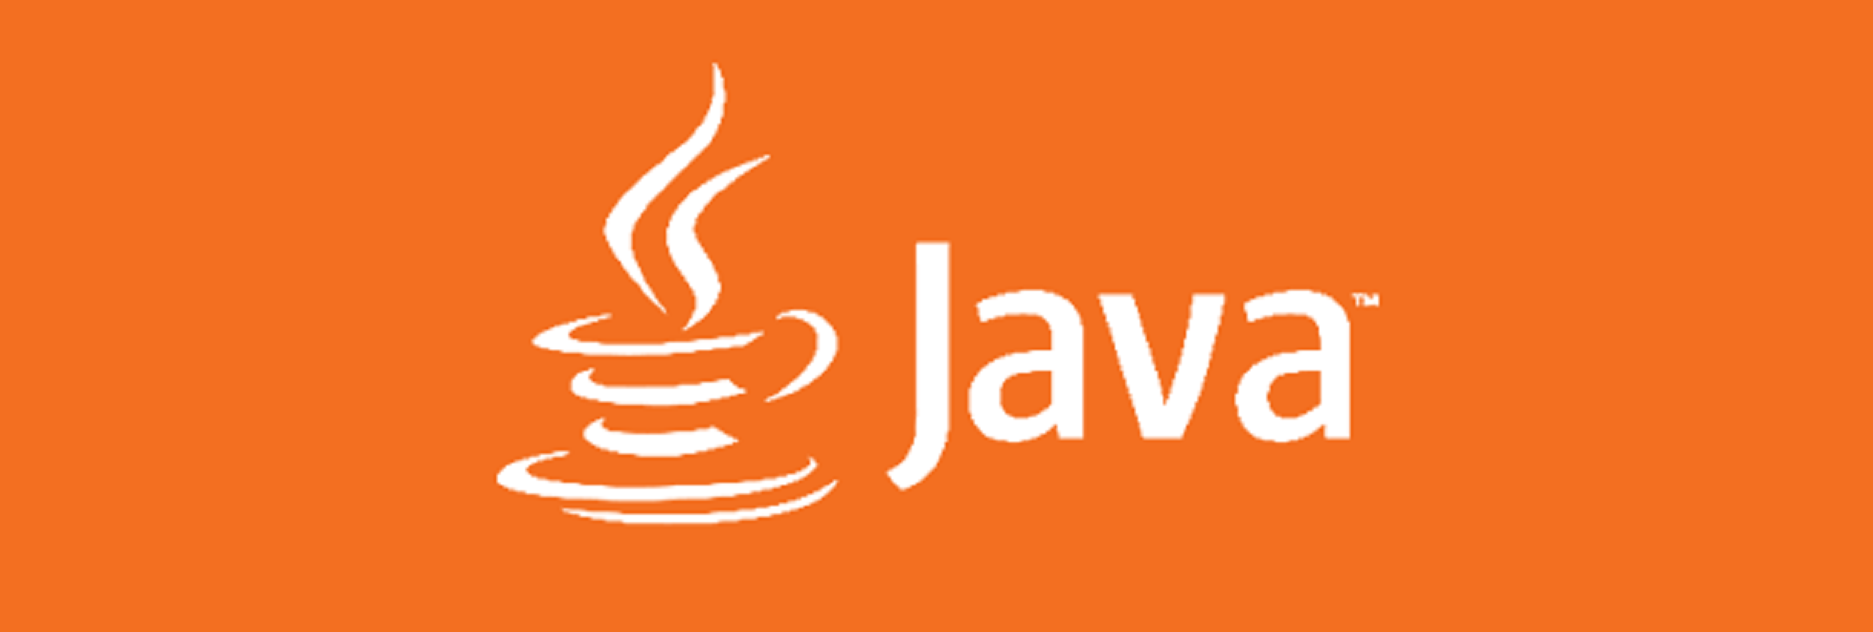 Java Full Stack Developer Course